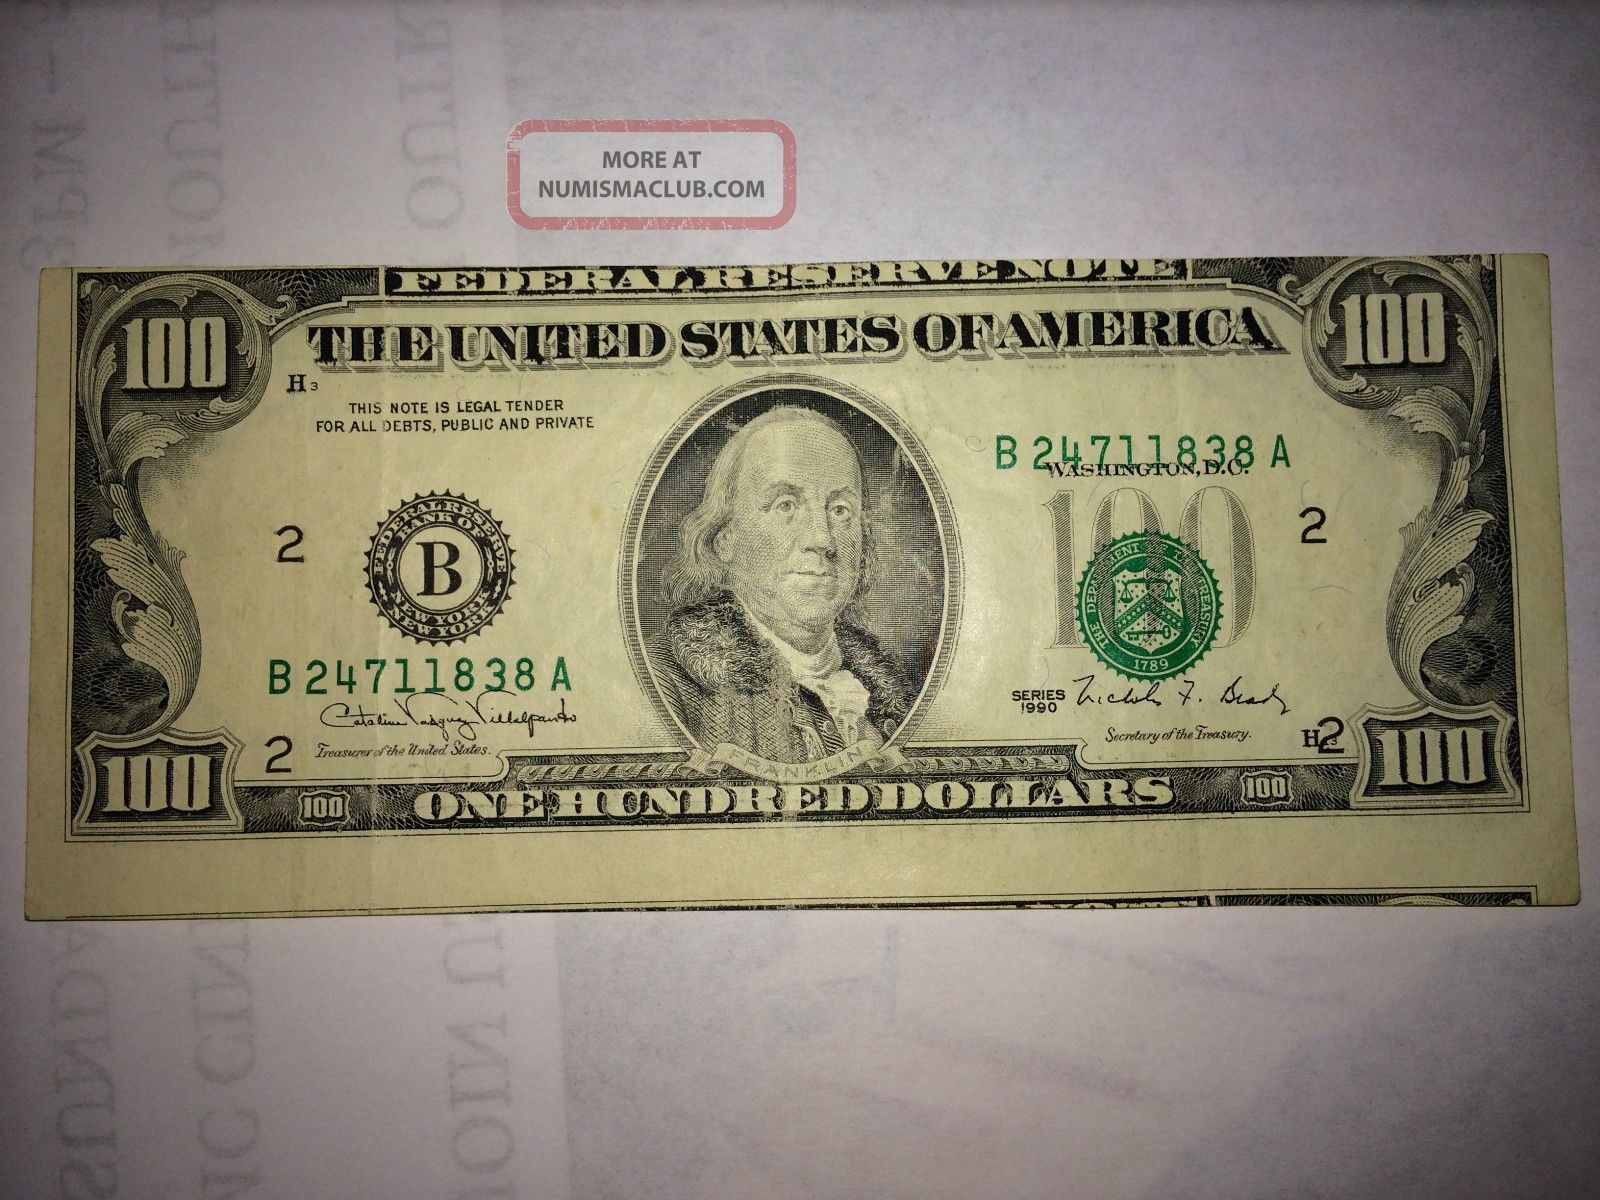 Rare $100 Bill Misprint